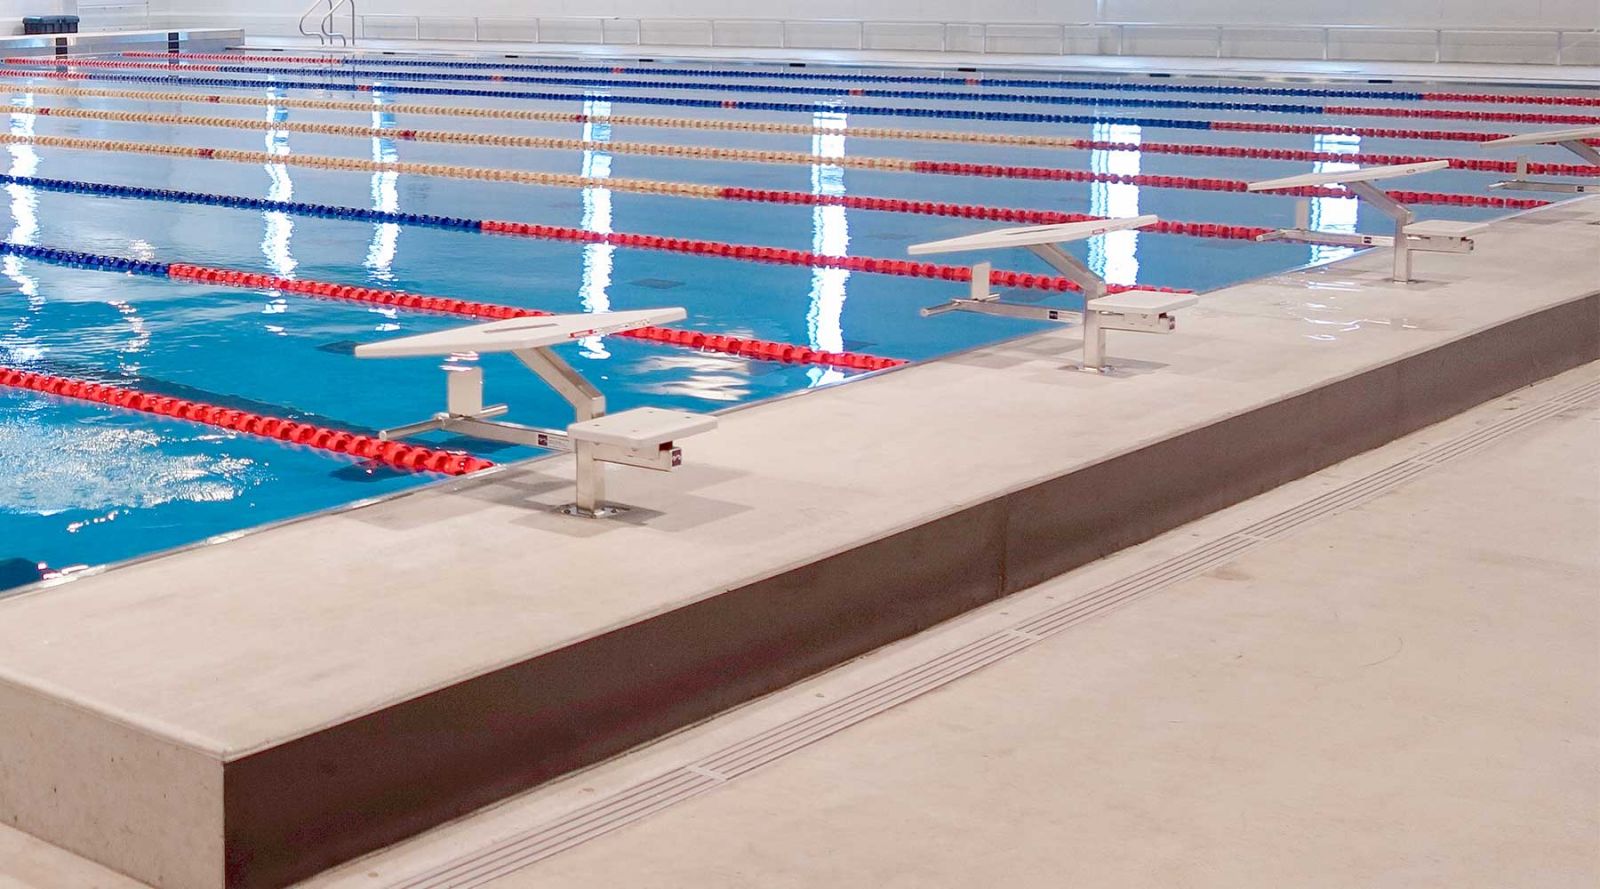 Thiết kế bể bơi thi đấu đảm bảo tiêu chuẩn đường bơi